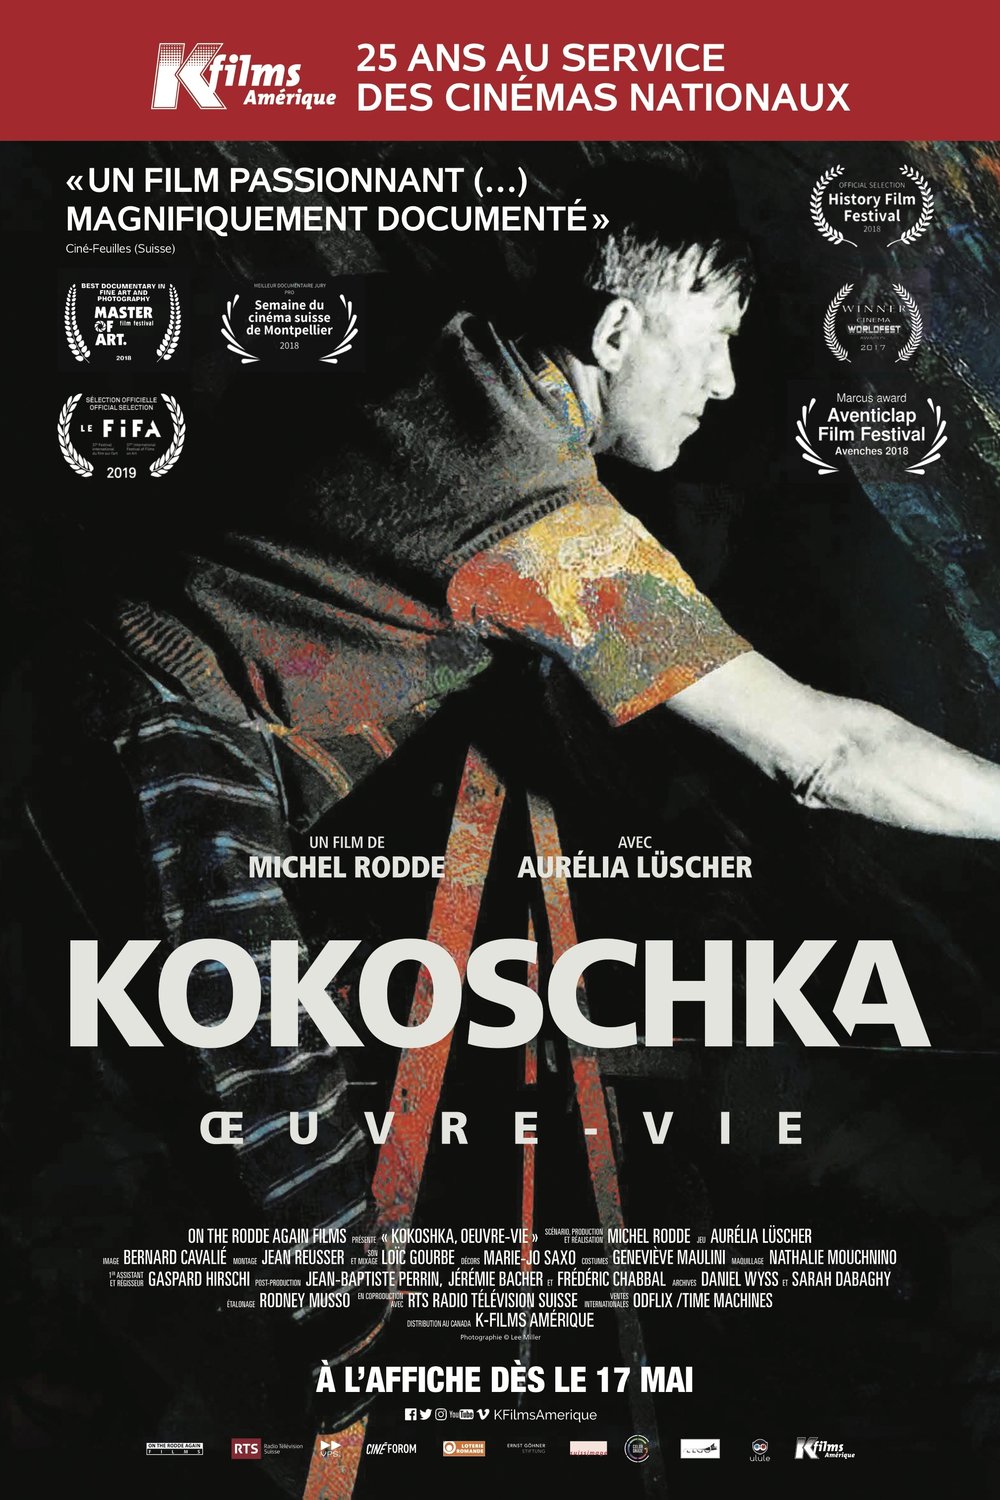 Poster of the movie Kokoschka, Oeuvre-Vie